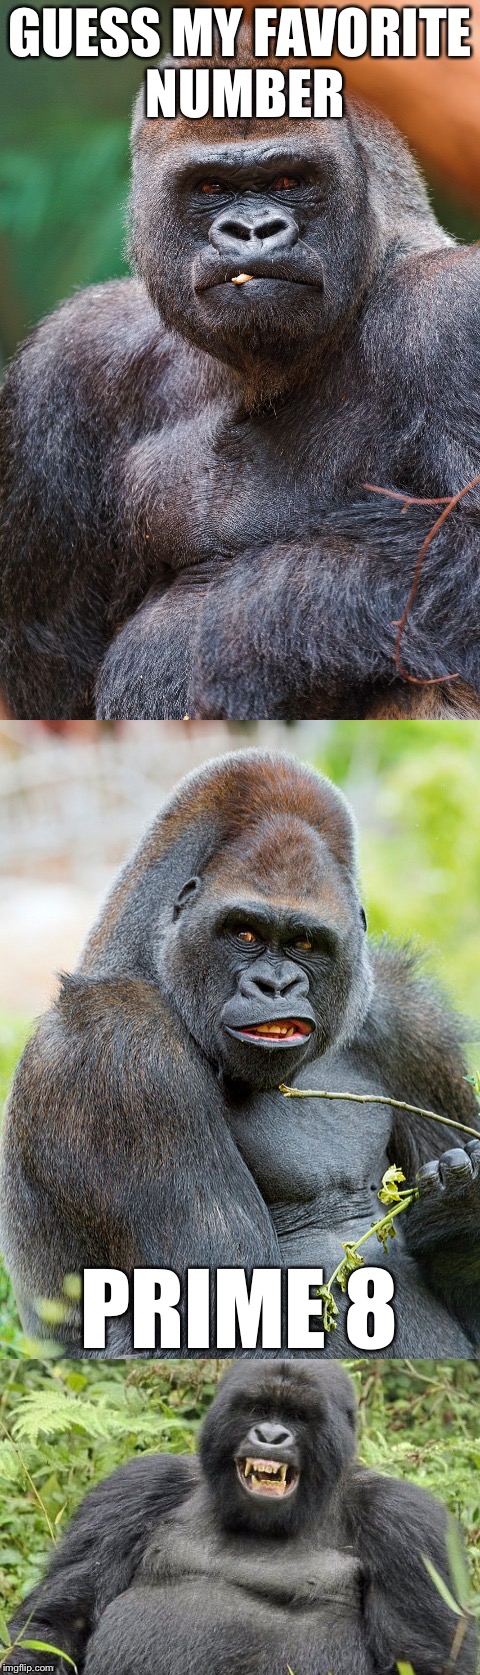 Bad Pun Gorilla | GUESS MY FAVORITE NUMBER; PRIME 8 | image tagged in bad pun gorilla,memes | made w/ Imgflip meme maker